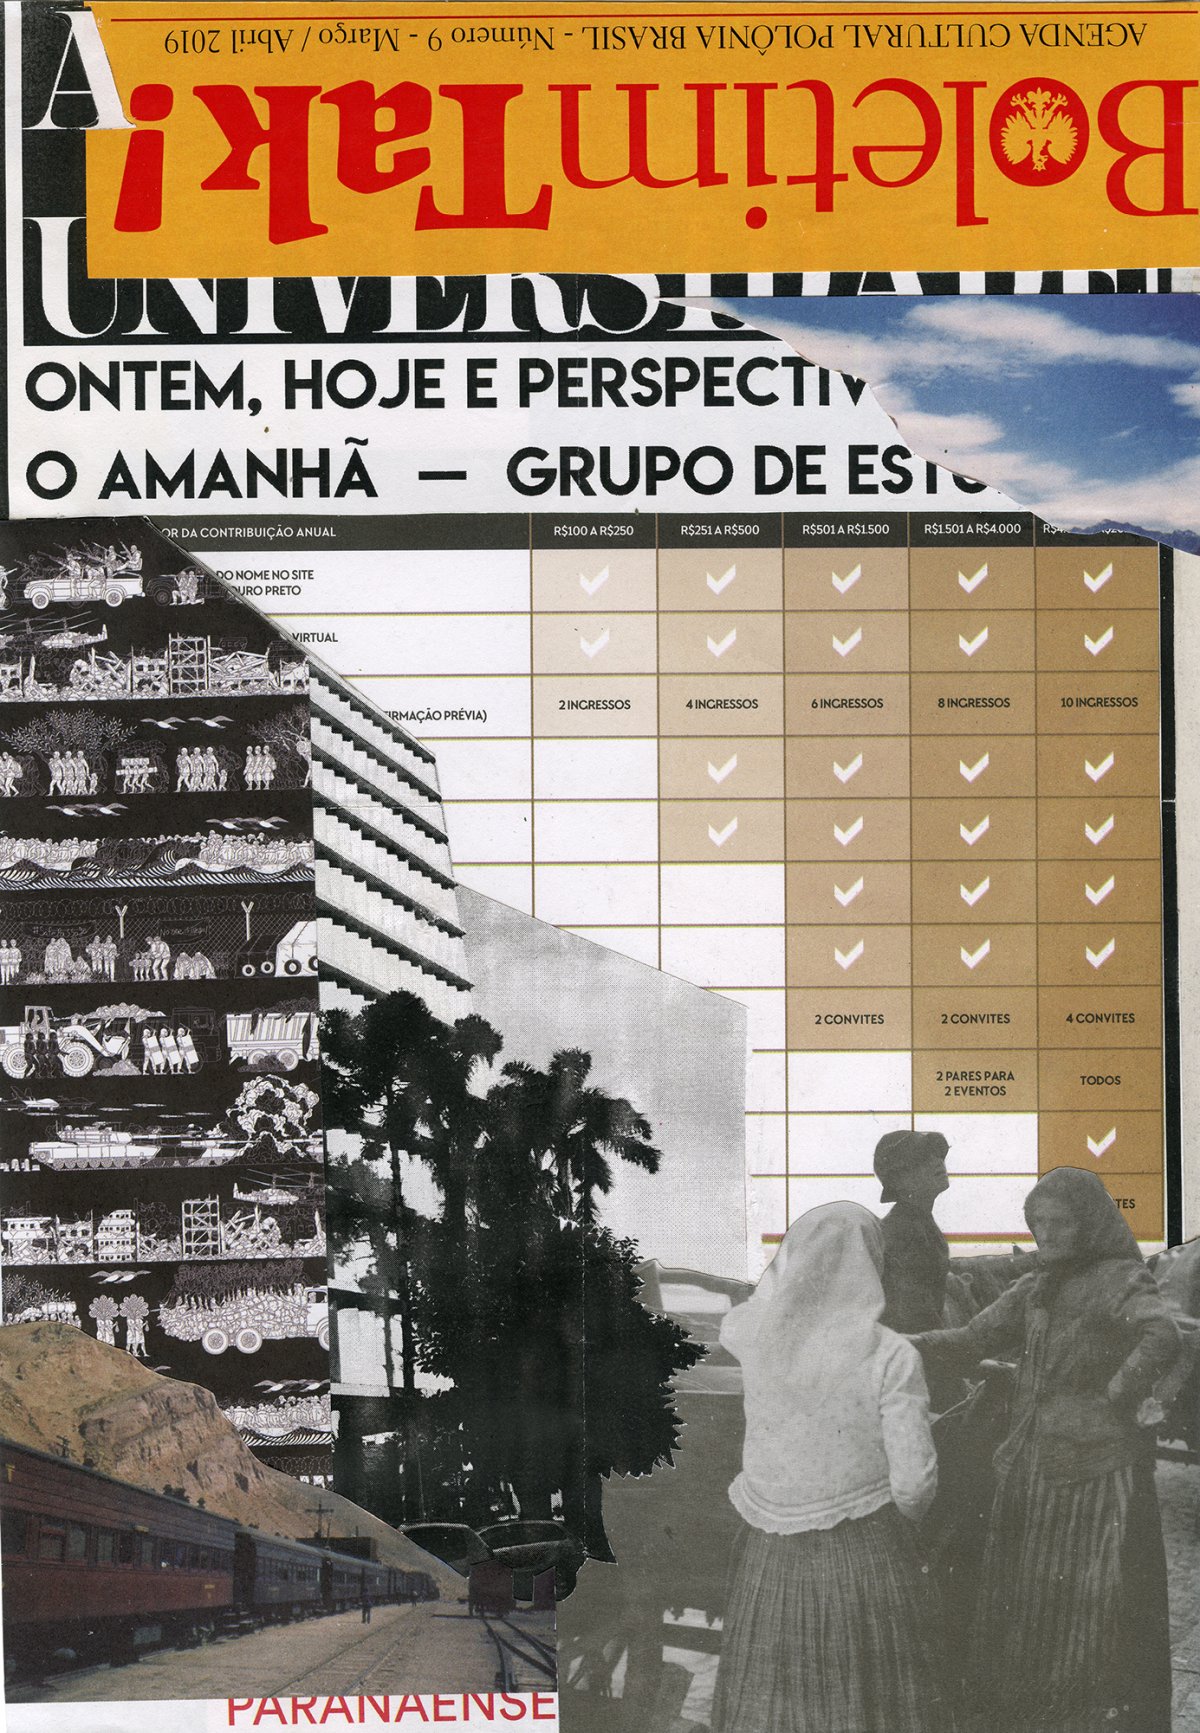 Widzenie powtórne [Brazylia Curitiba], 2019, kolaz papier, 28x20cm